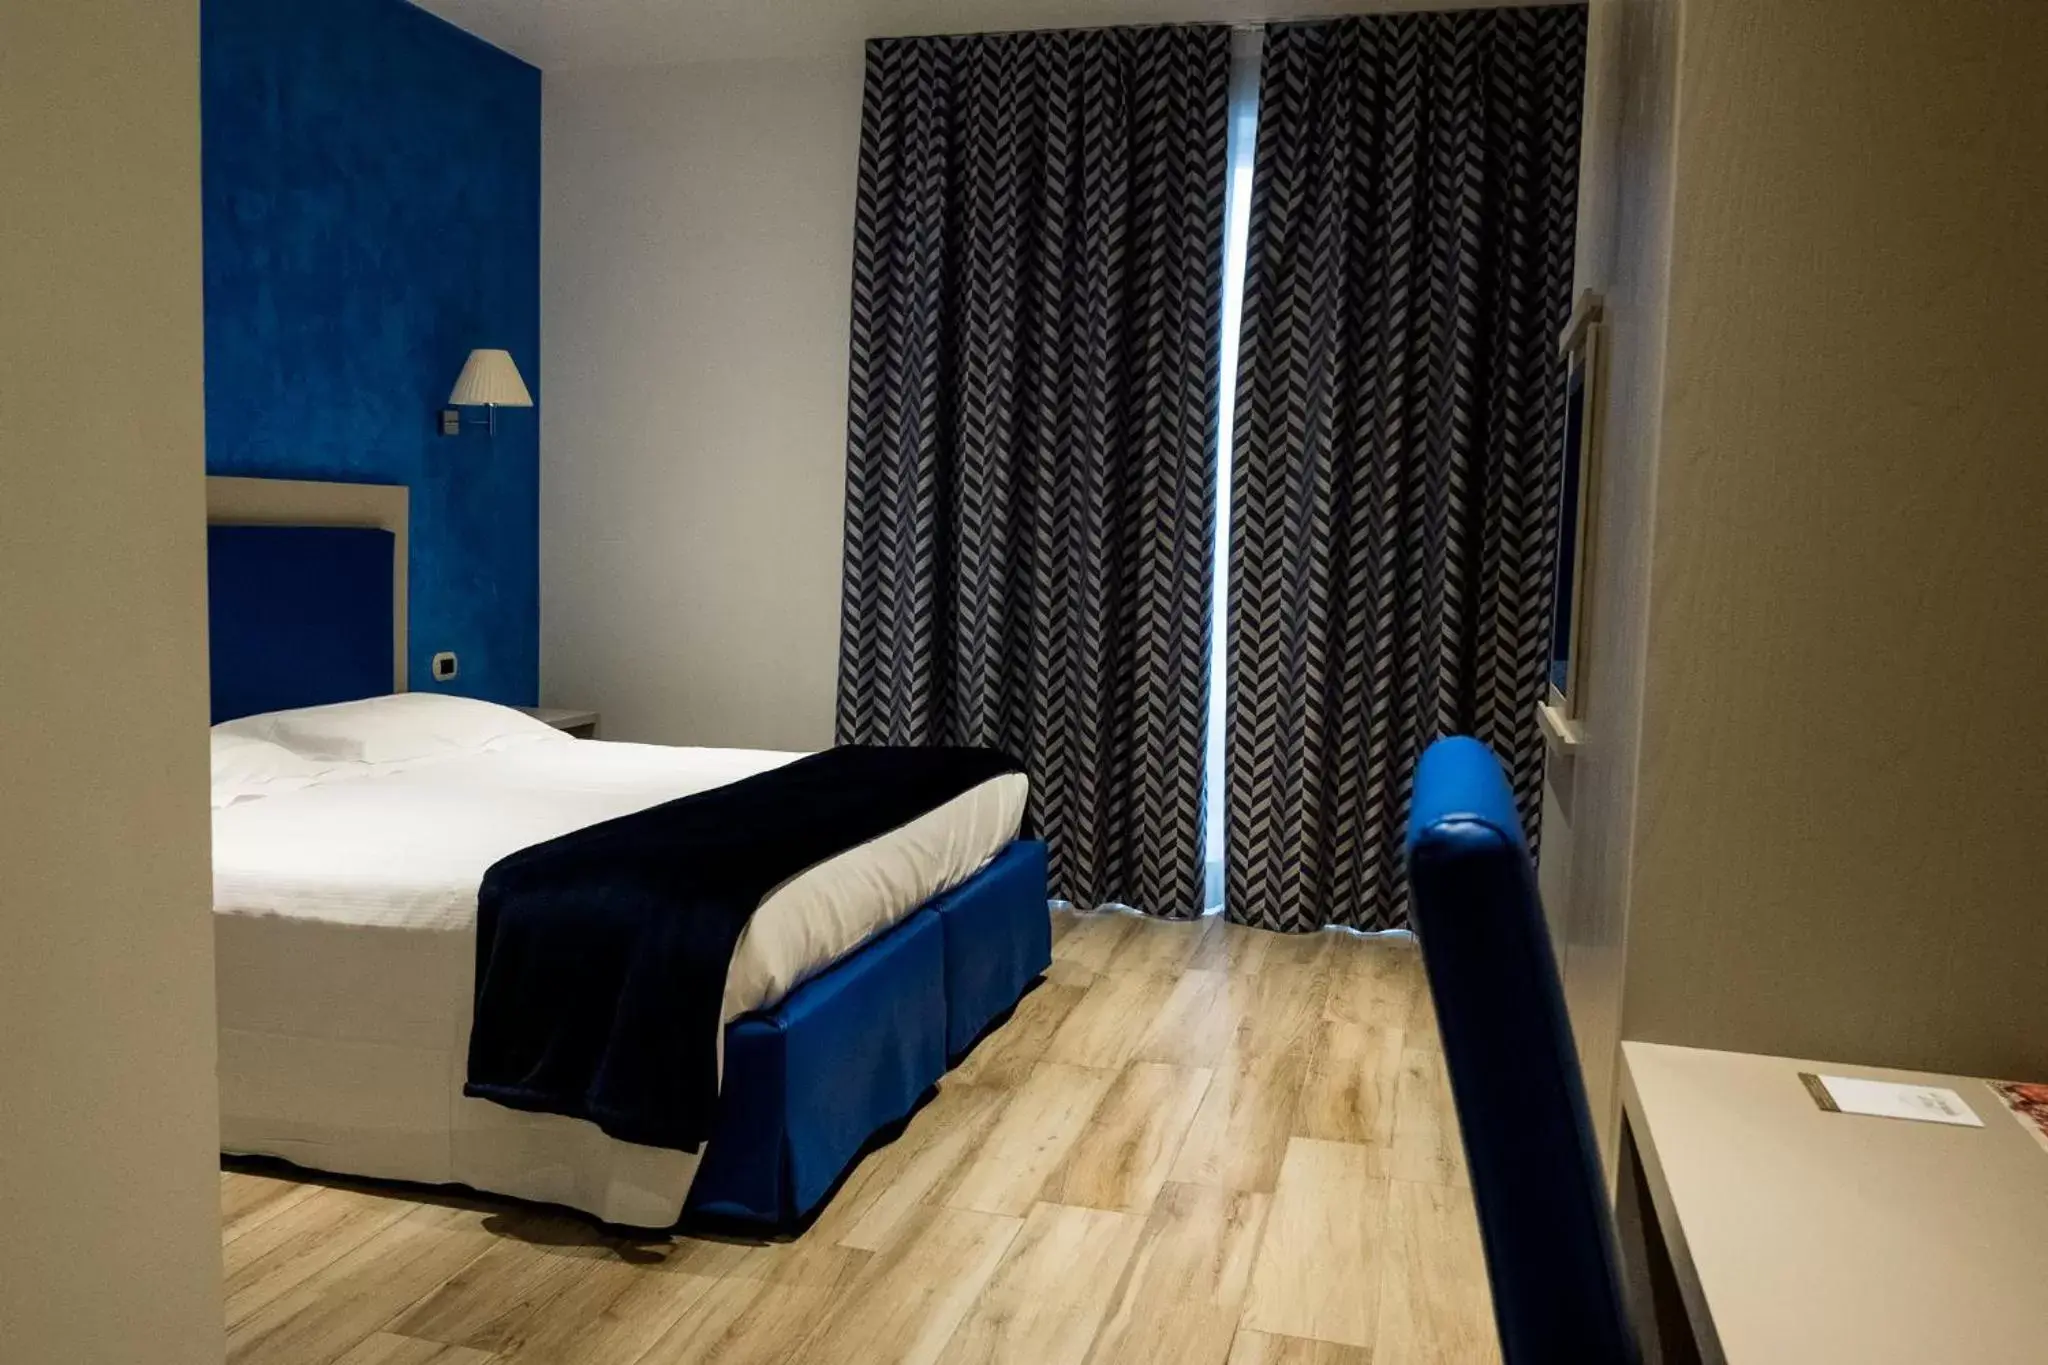 Bed in Palace Hotel "La CONCHIGLIA D' ORO"